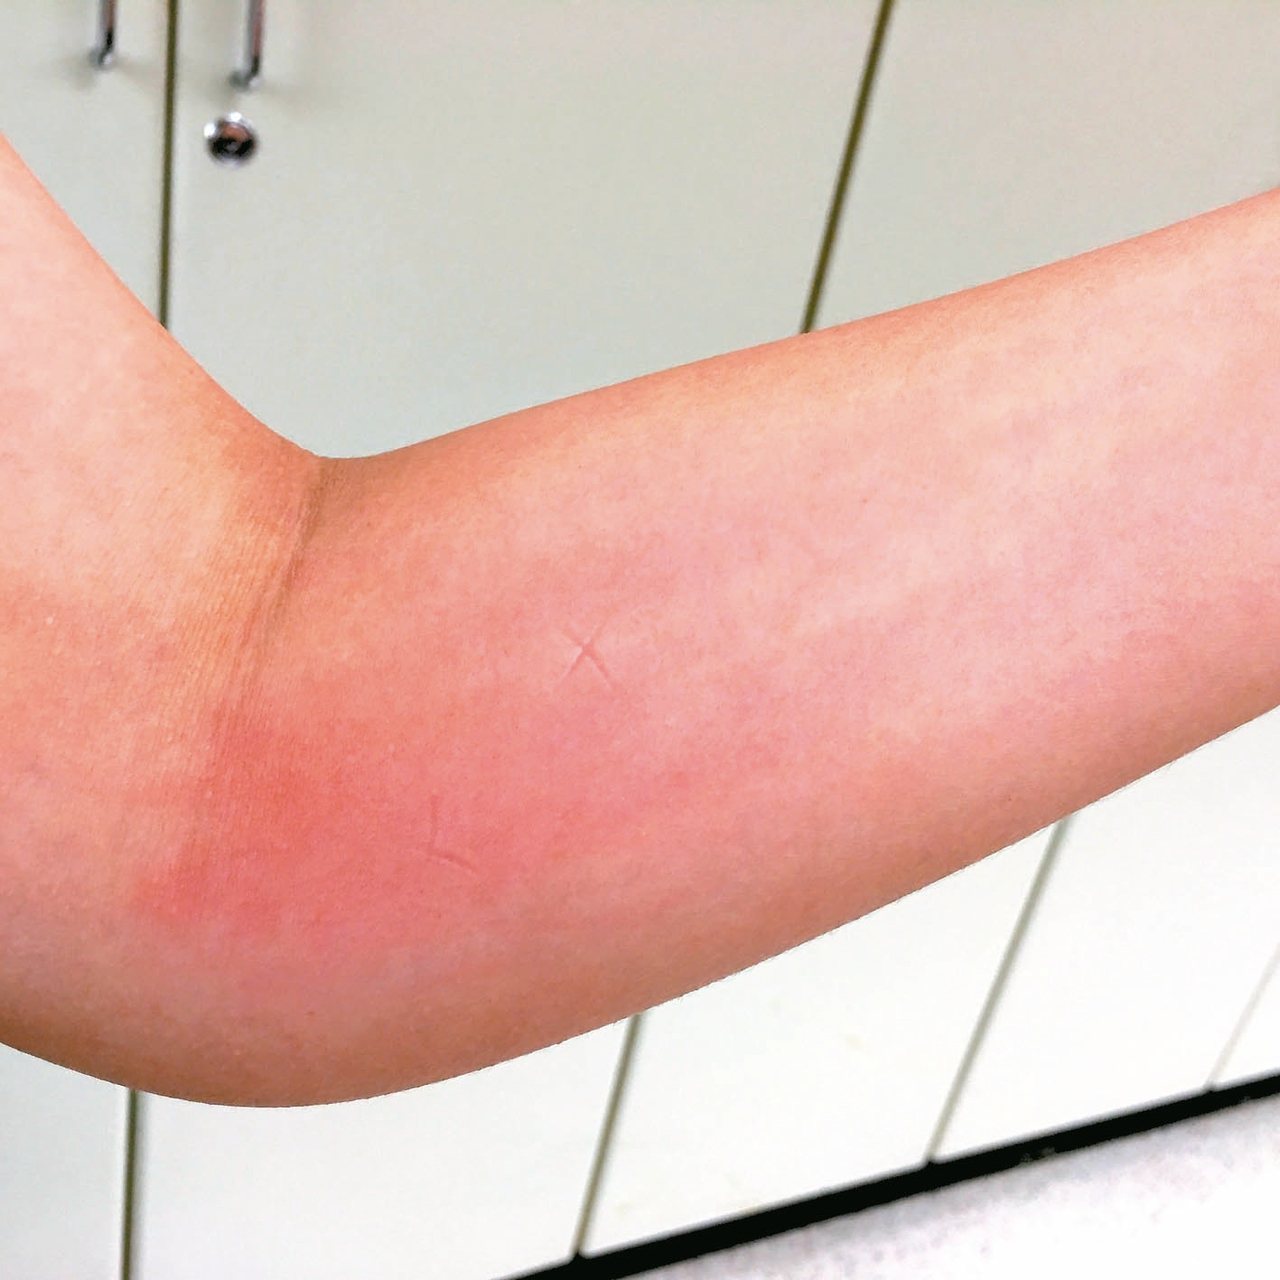 遭蚊蟲叮咬常使皮膚紅腫癢，醫師指出，常見的指甲壓痕或用原子筆畫圈，都是錯誤止癢方式。